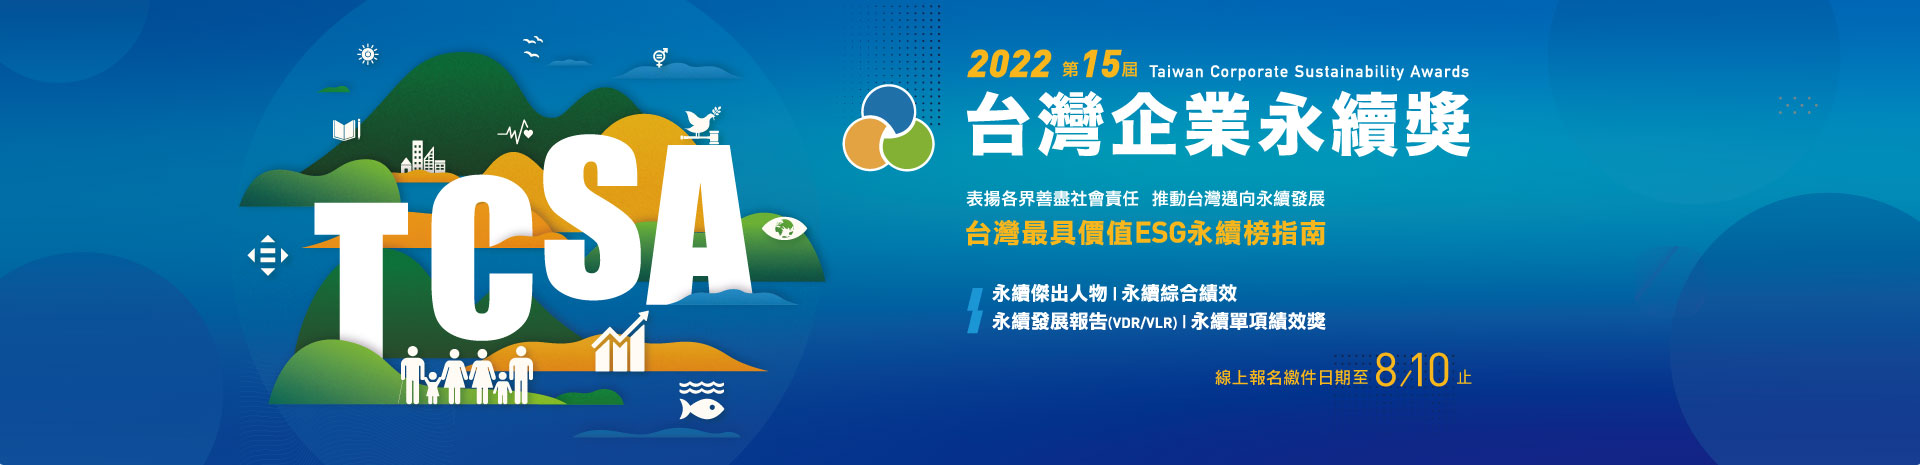 2022第十五屆台灣企業永續獎開放報名 